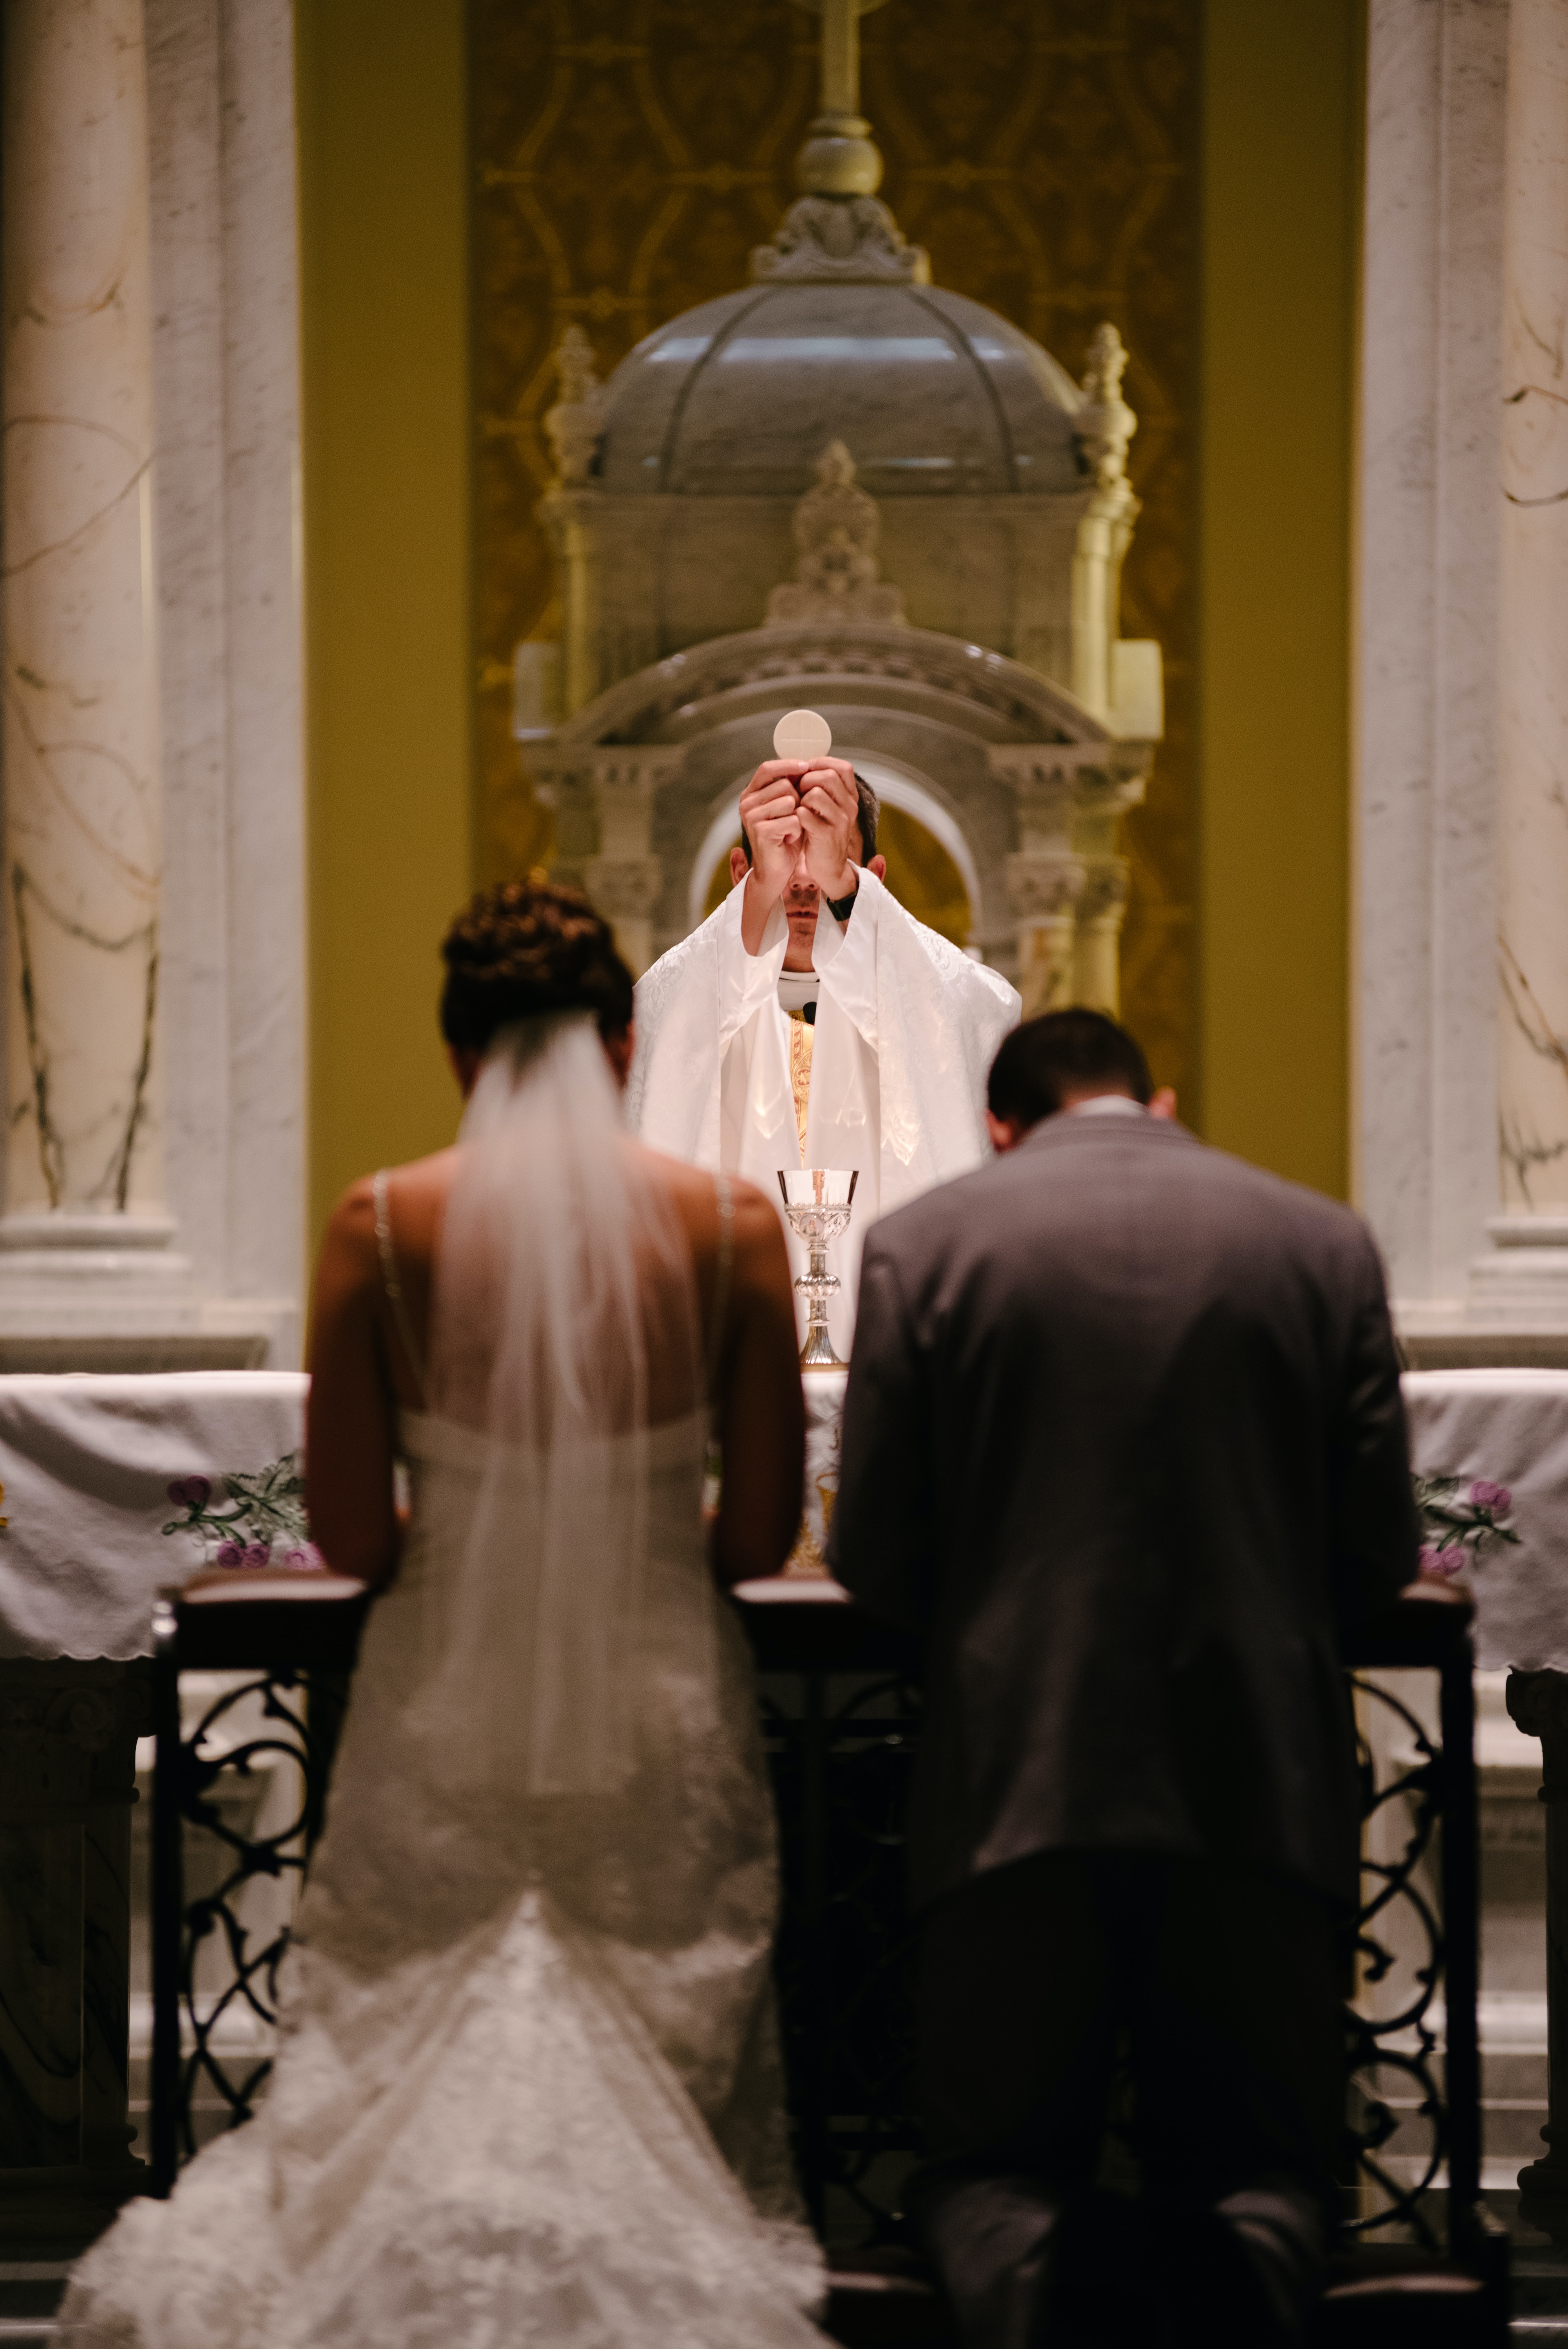 Un homme officiant le mariage d'un couple à l'église | Source : Freepik